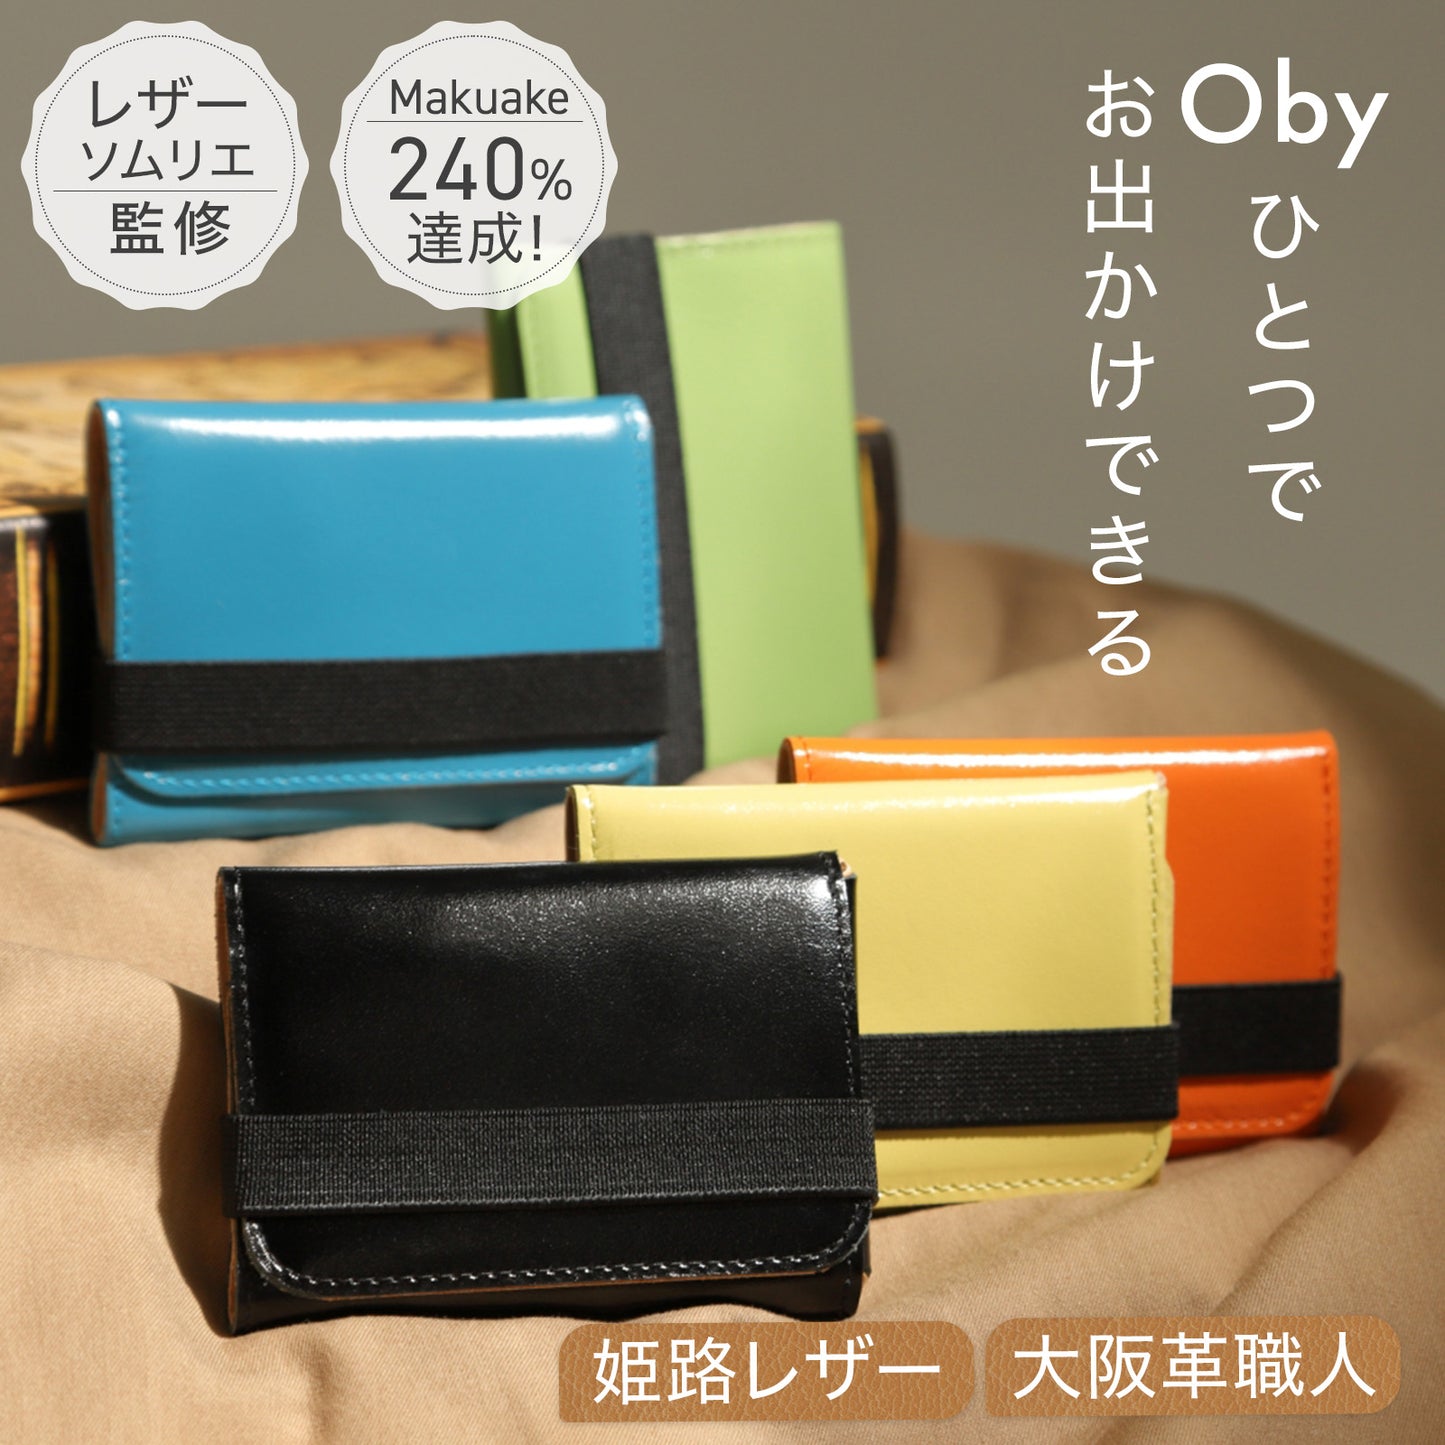 【新感覚コンパクト財布】Oby<オビー>